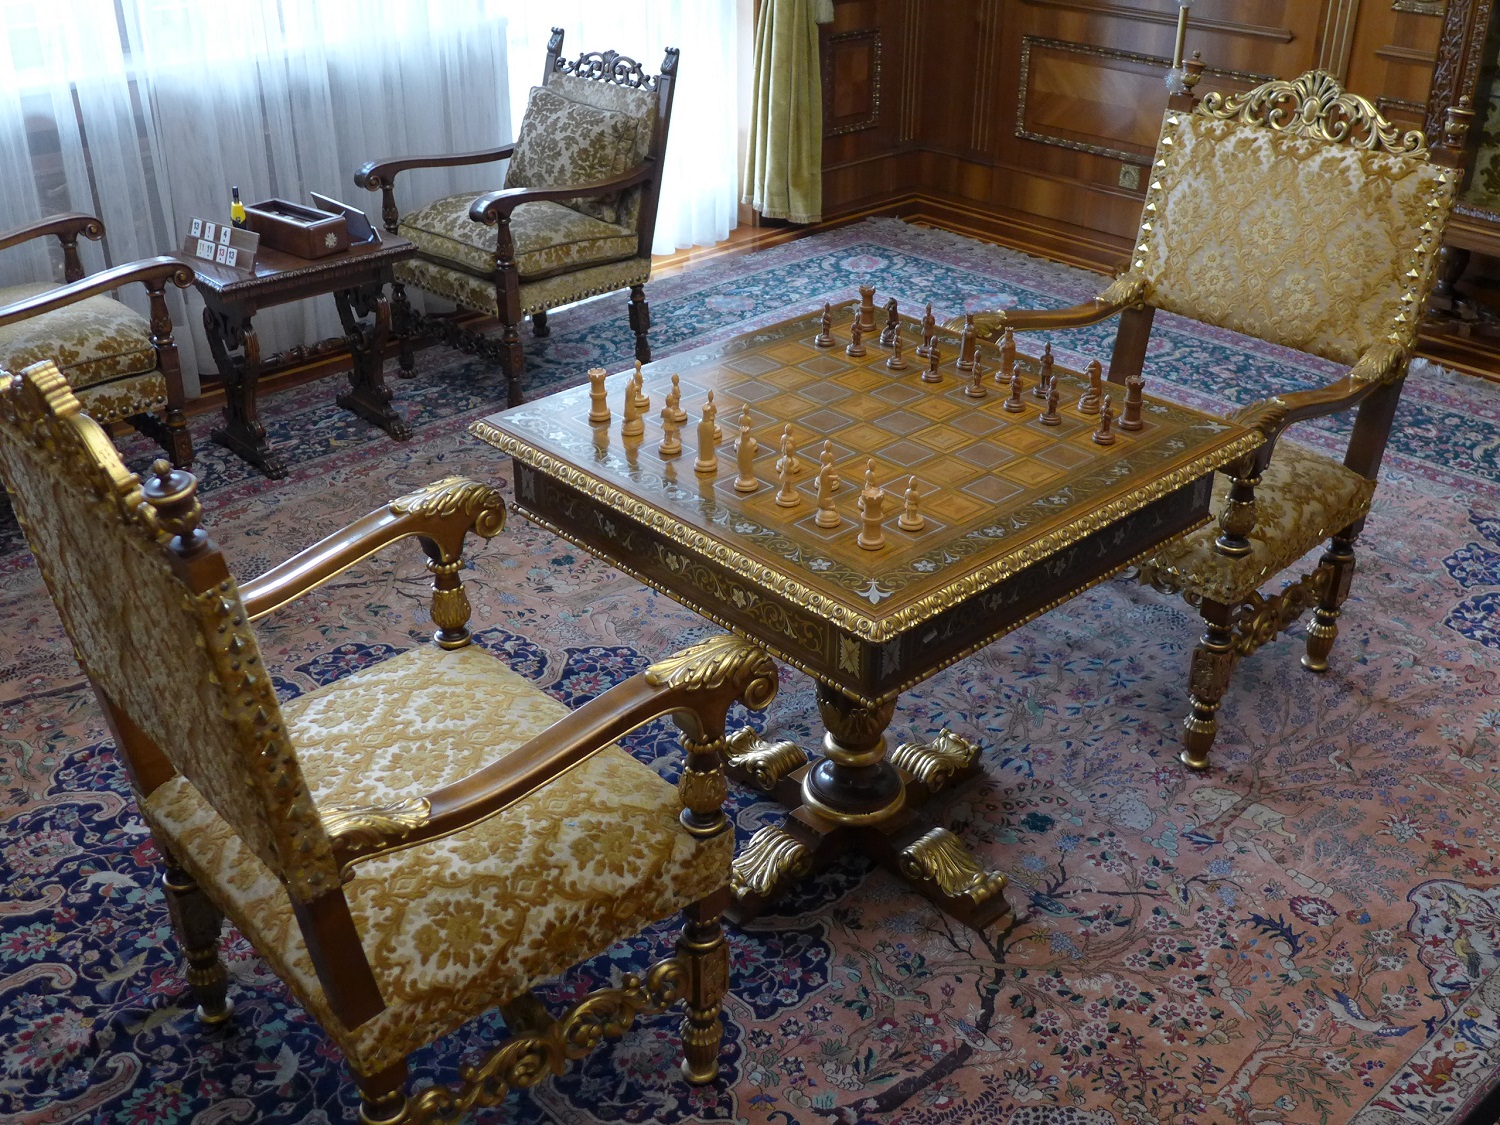 La salle de jeux, avec notamment une table d’échecs.